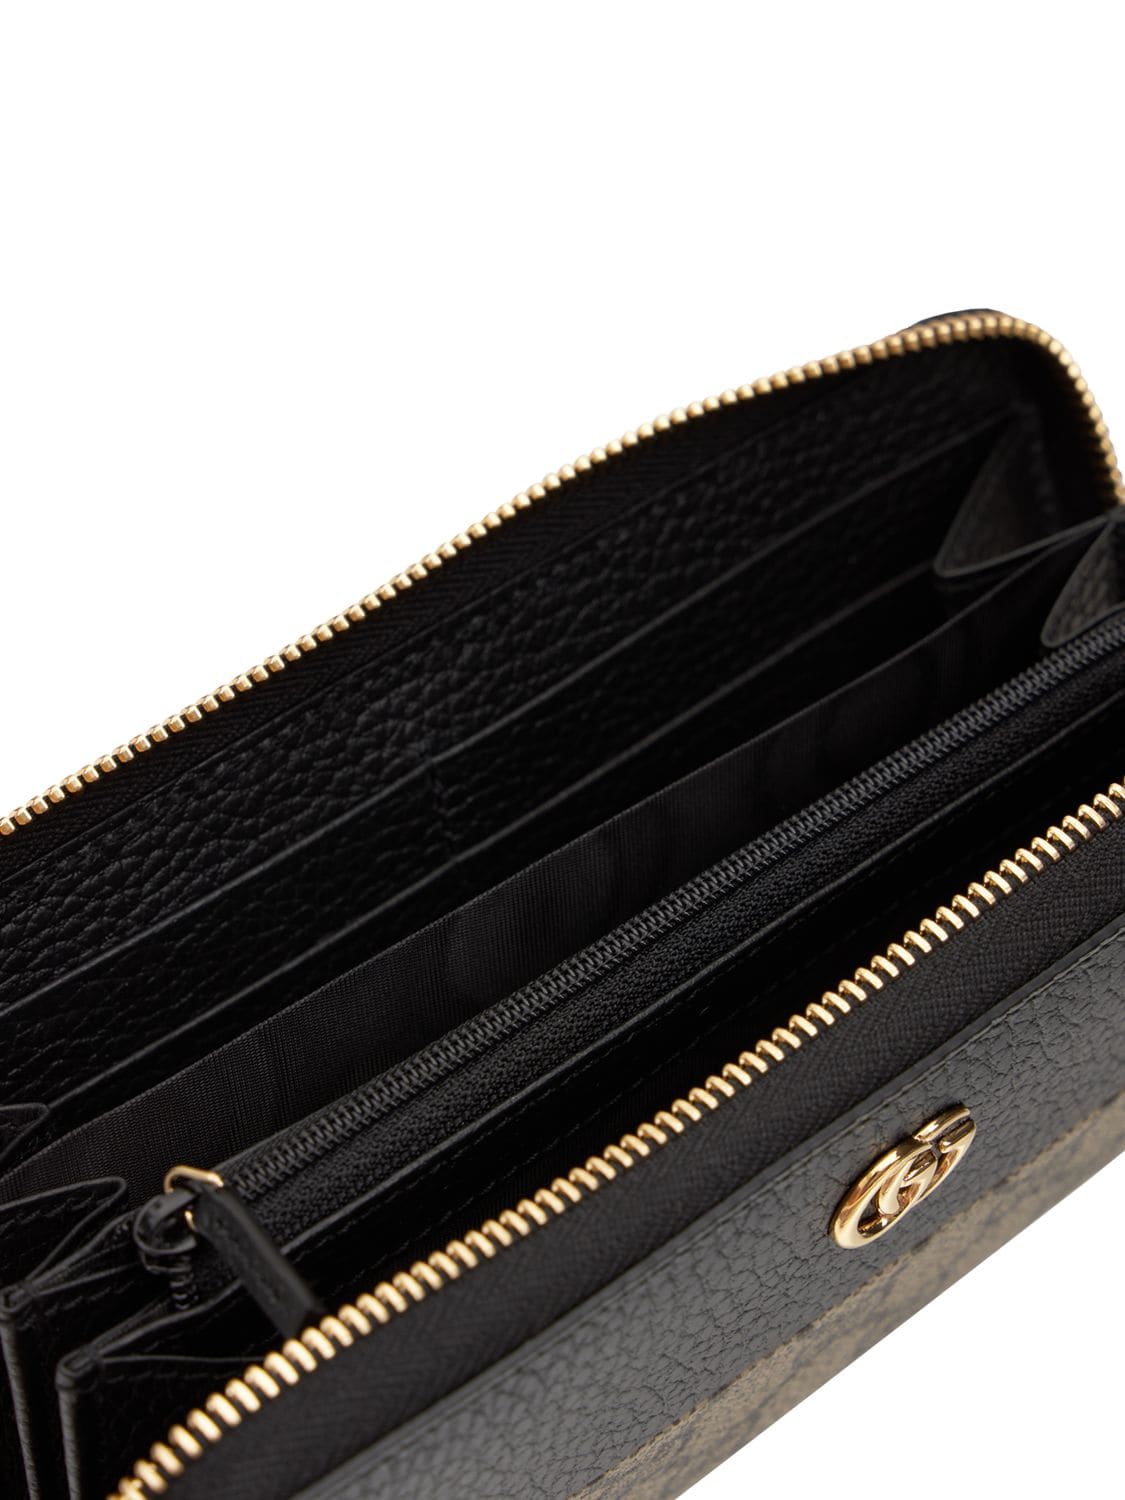 Shop Gucci Gg Marmont Zip Around Wallet In Бежевый,чёрный